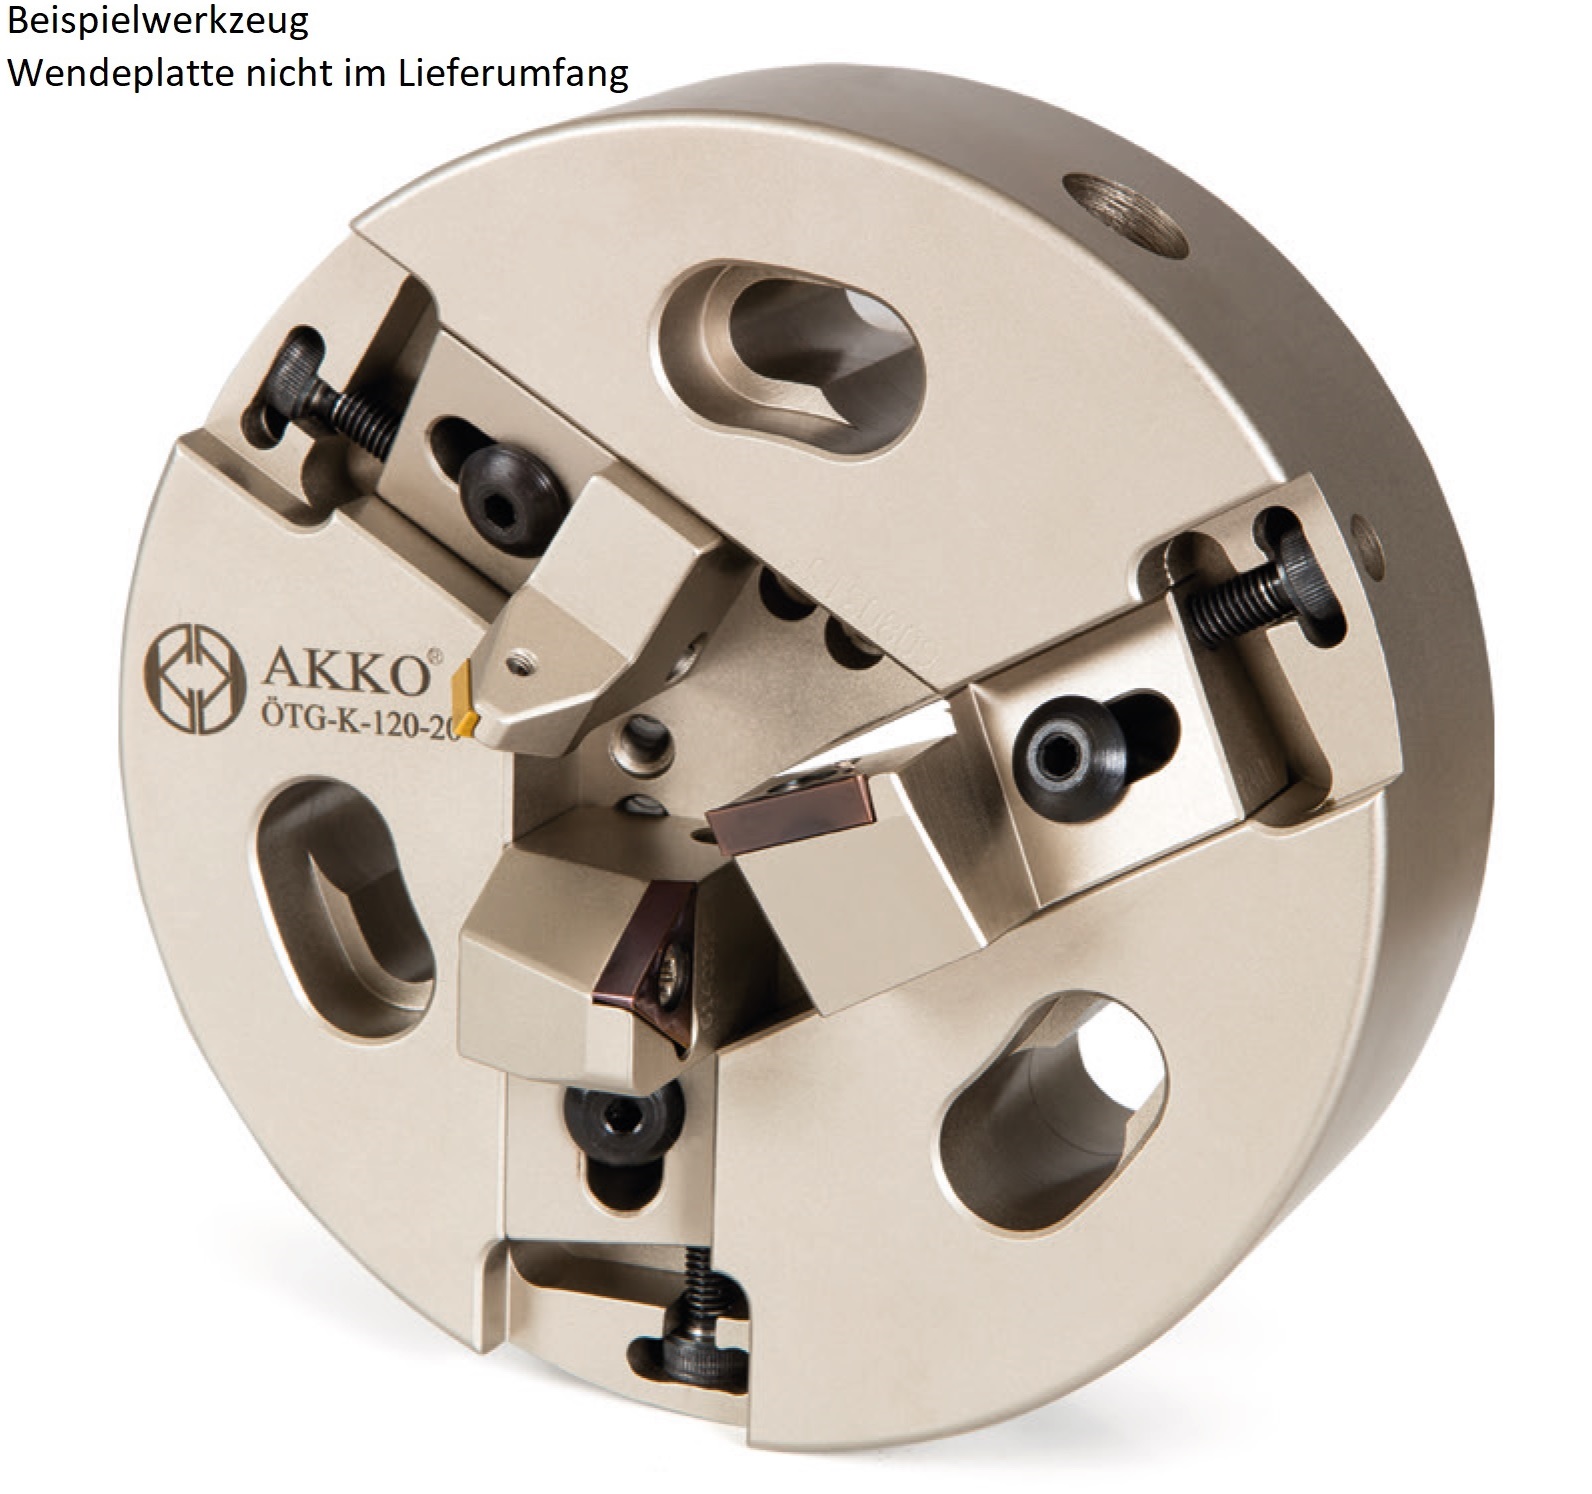 AKKO-Rohrenden-Anfaswerkzeug Dmax 78 mm, Dmin 43 mm, kompatibel mit ISO-Wendeplatte TC.. 16T3..
